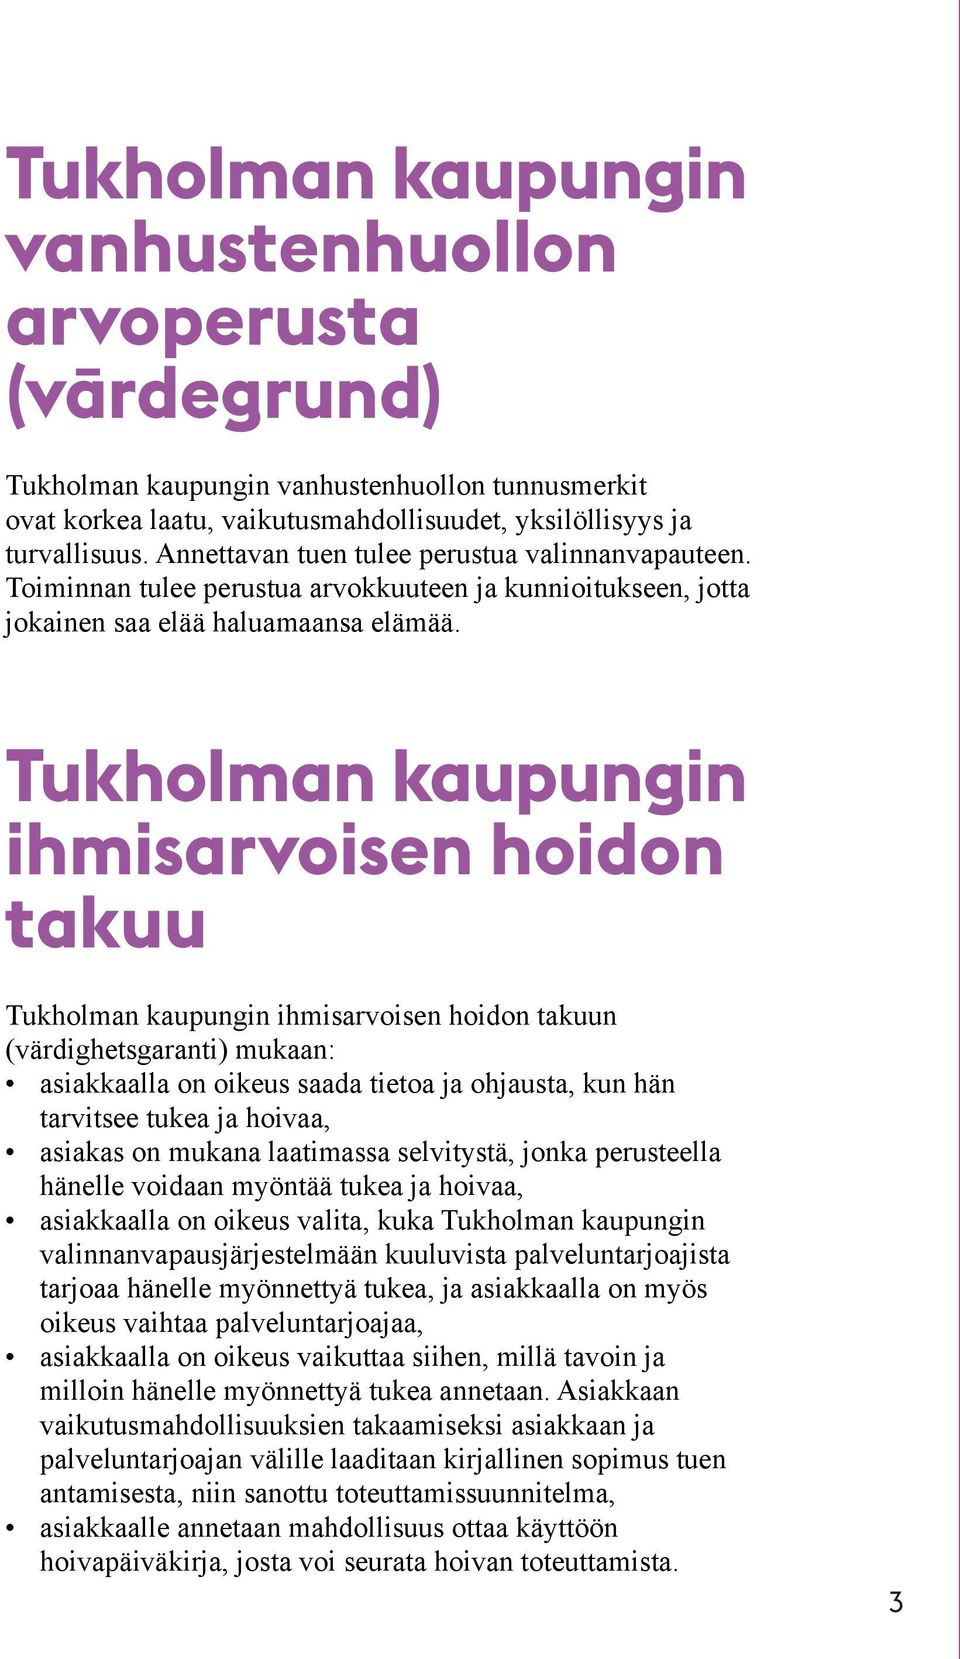 Tukholman kaupungin ihmisarvoisen hoidon takuu Tukholman kaupungin ihmisarvoisen hoidon takuun (värdighetsgaranti) mukaan: asiakkaalla on oikeus saada tietoa ja ohjausta, kun hän tarvitsee tukea ja